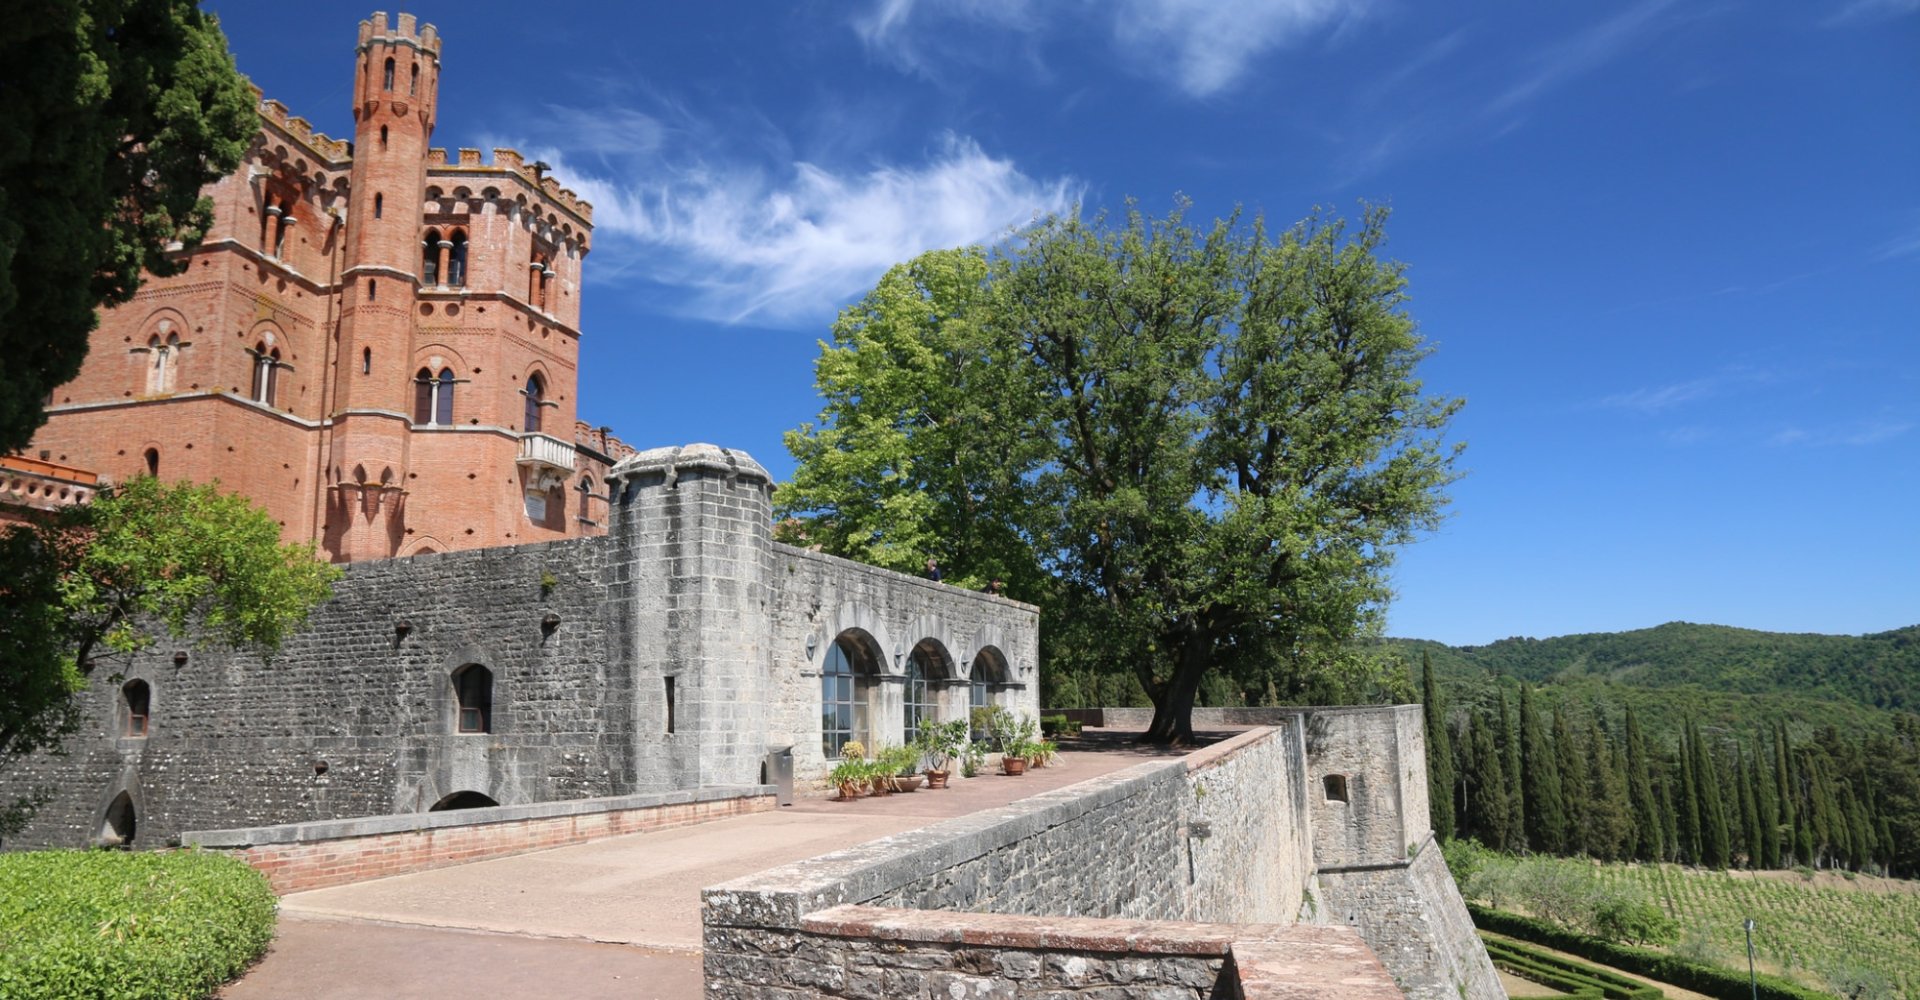 Brolio castle